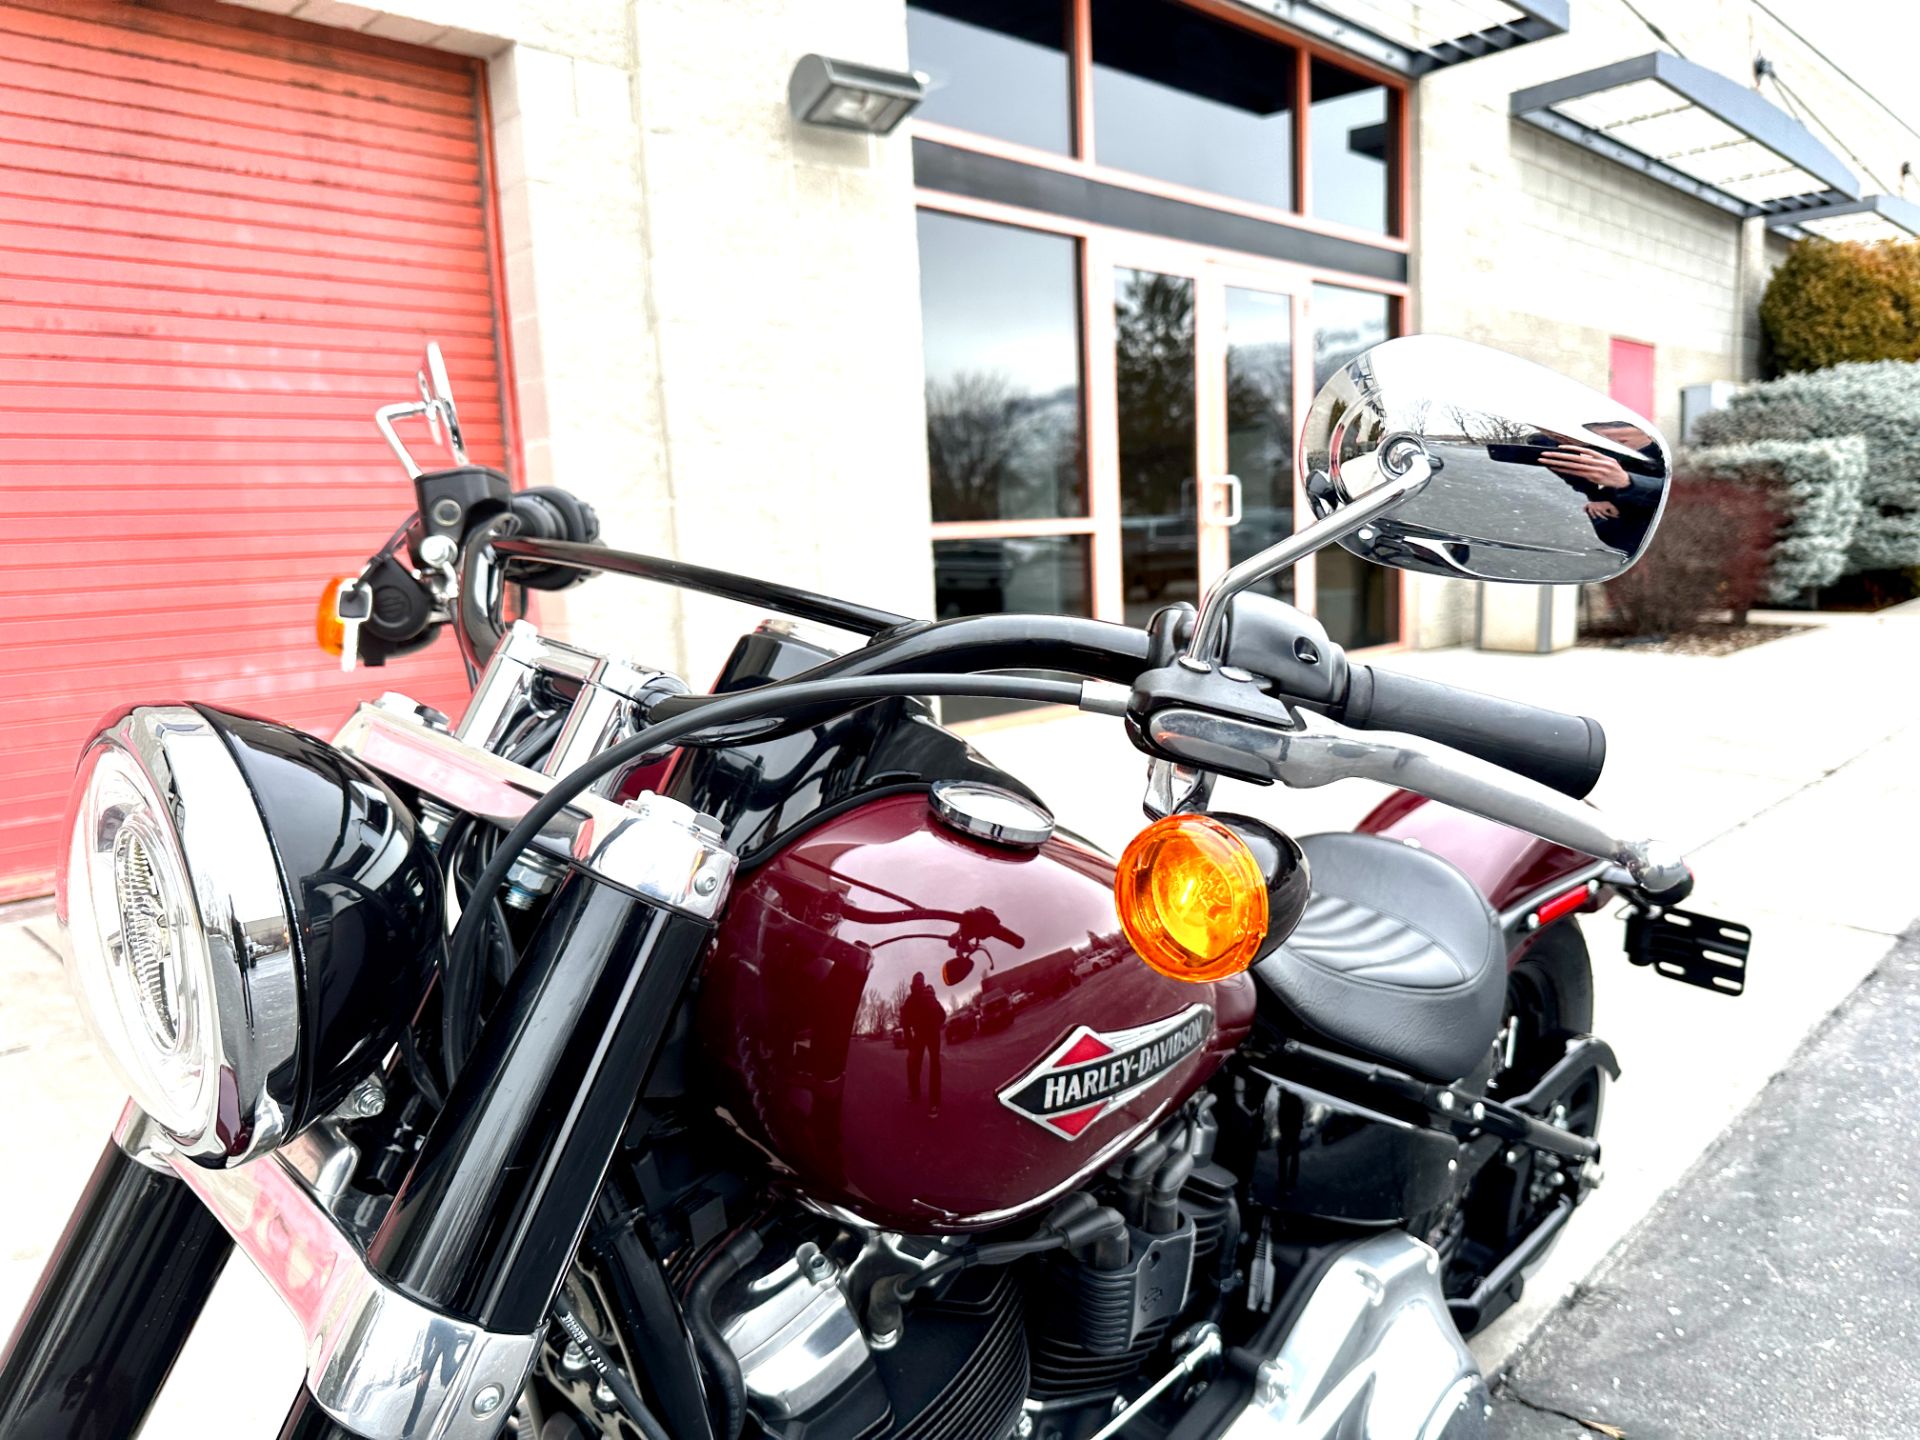 2020 Harley-Davidson Softail Slim® in Sandy, Utah - Photo 10